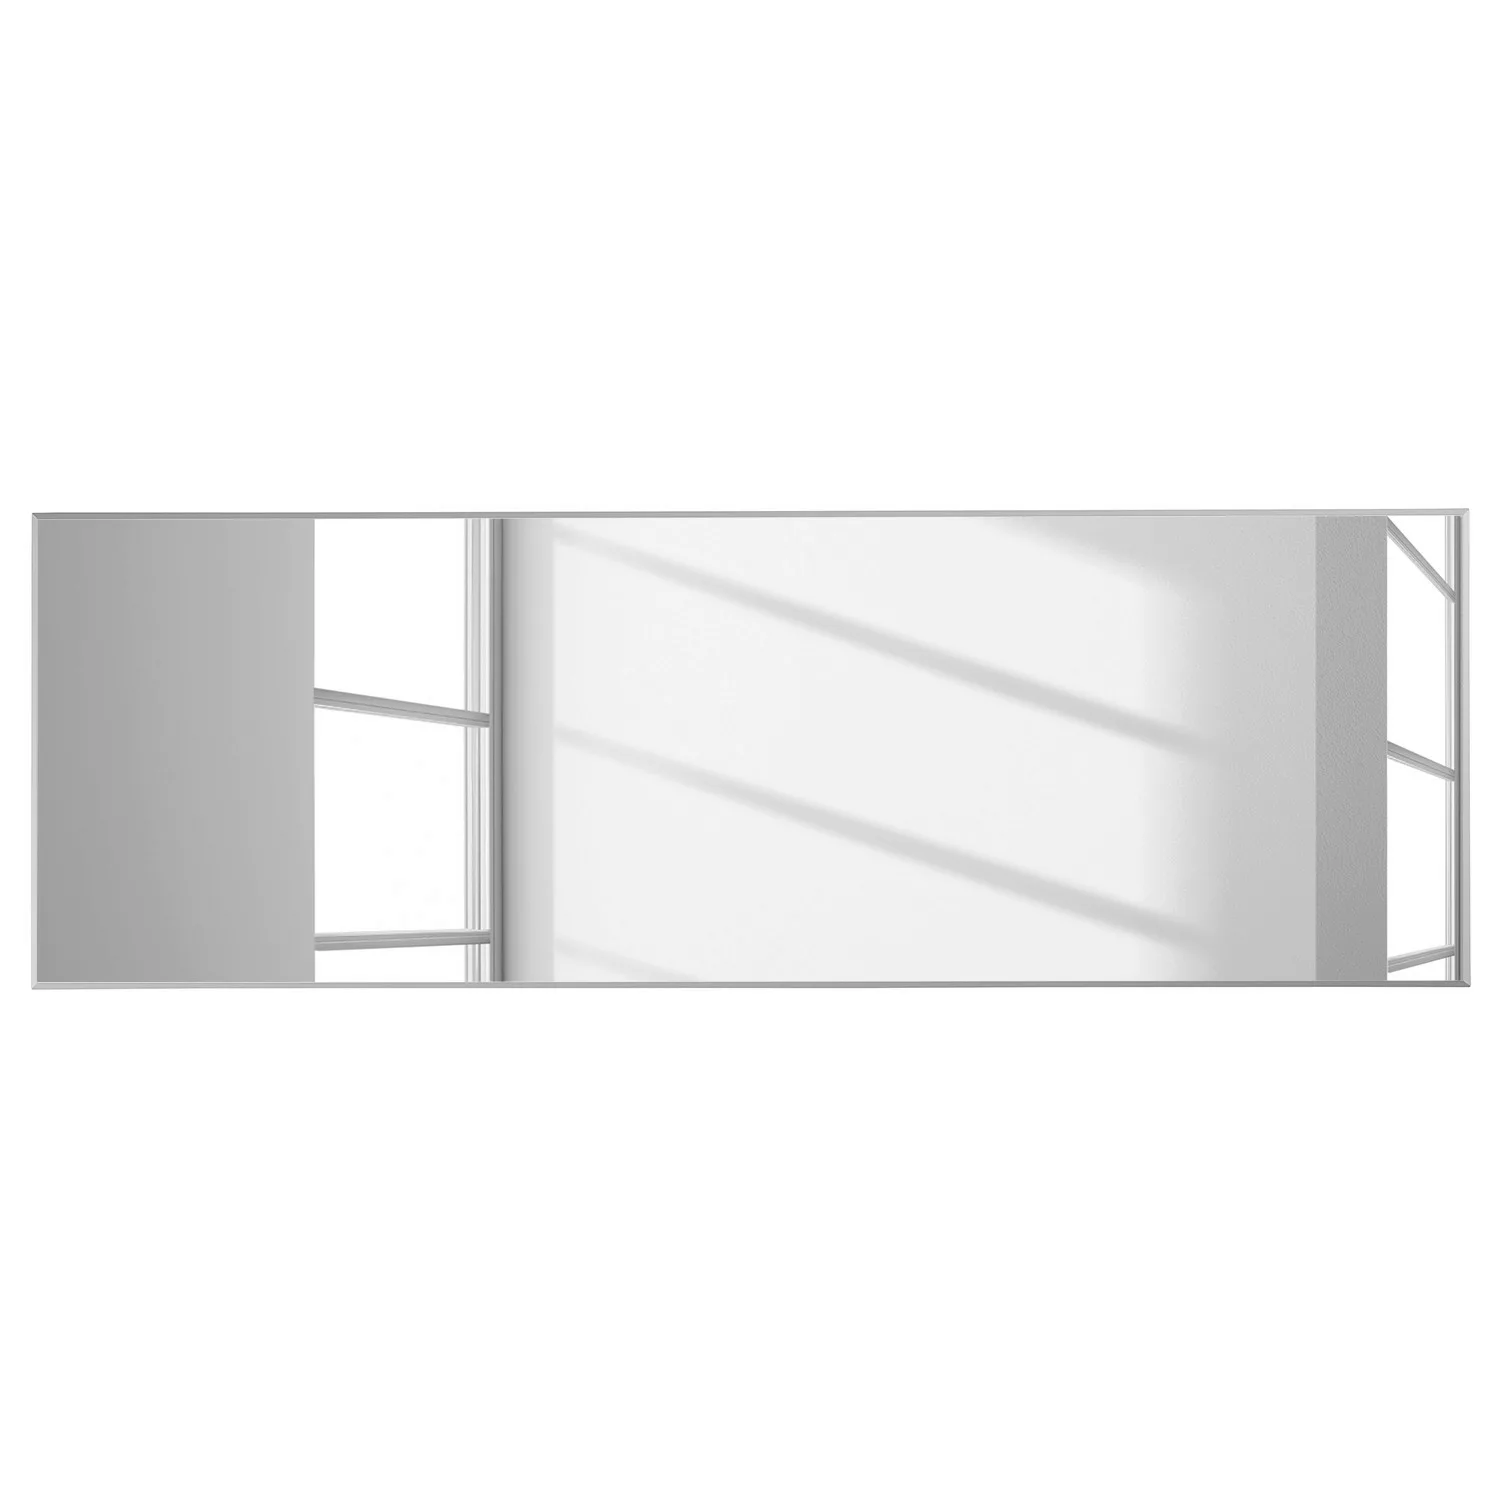 Spiegel - verspiegelt - 180 cm - 60 cm - 2 cm - Sconto günstig online kaufen